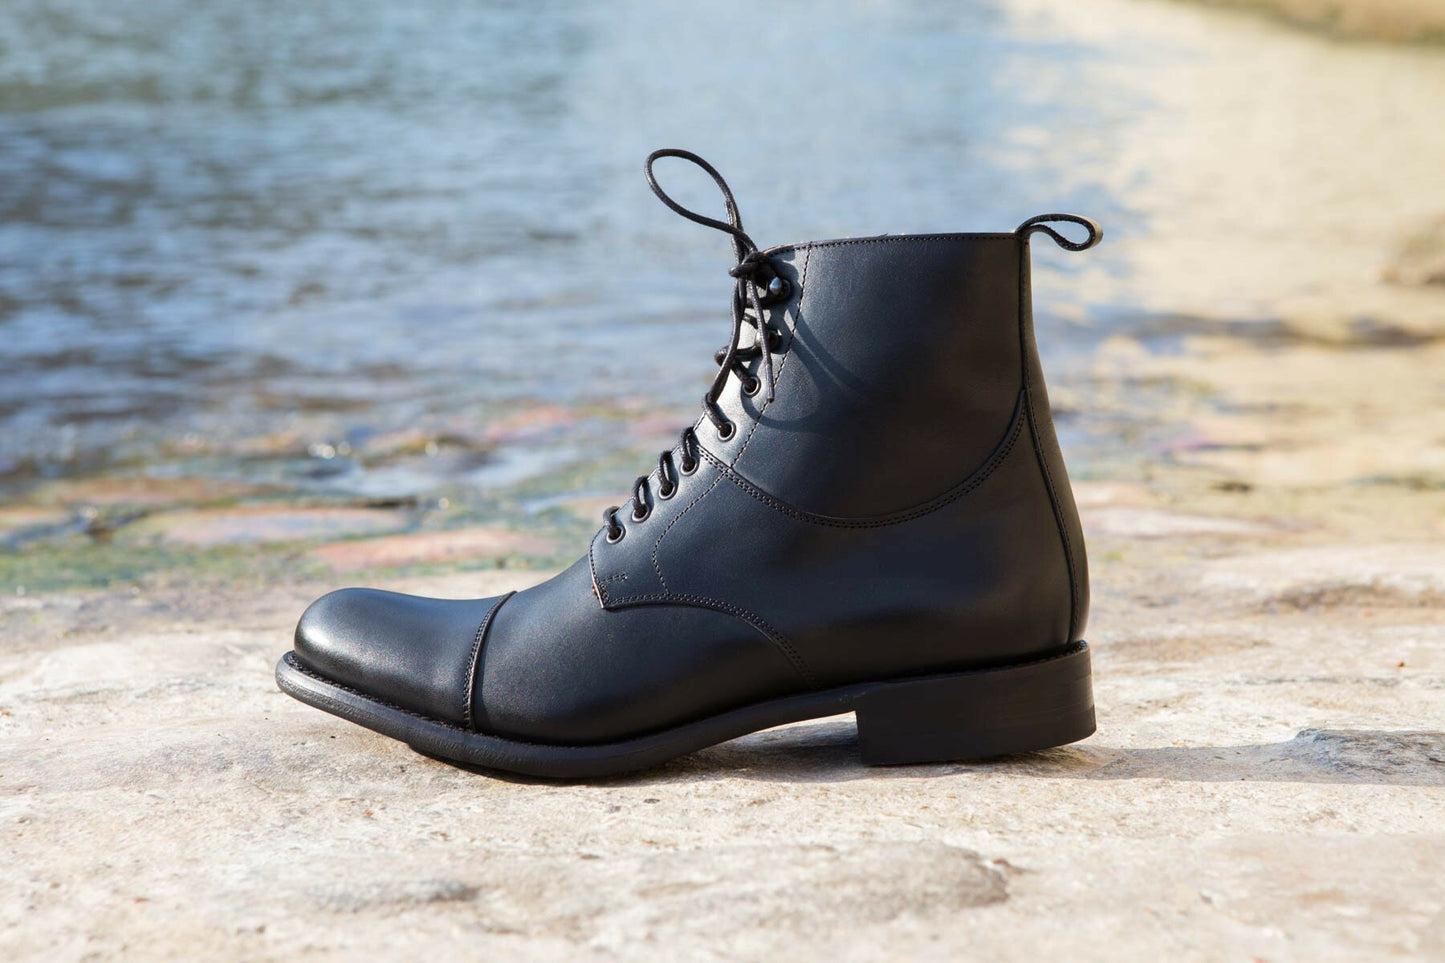 BRITISH SHOES - Boots lacets cuir noir semelle cousue gomme